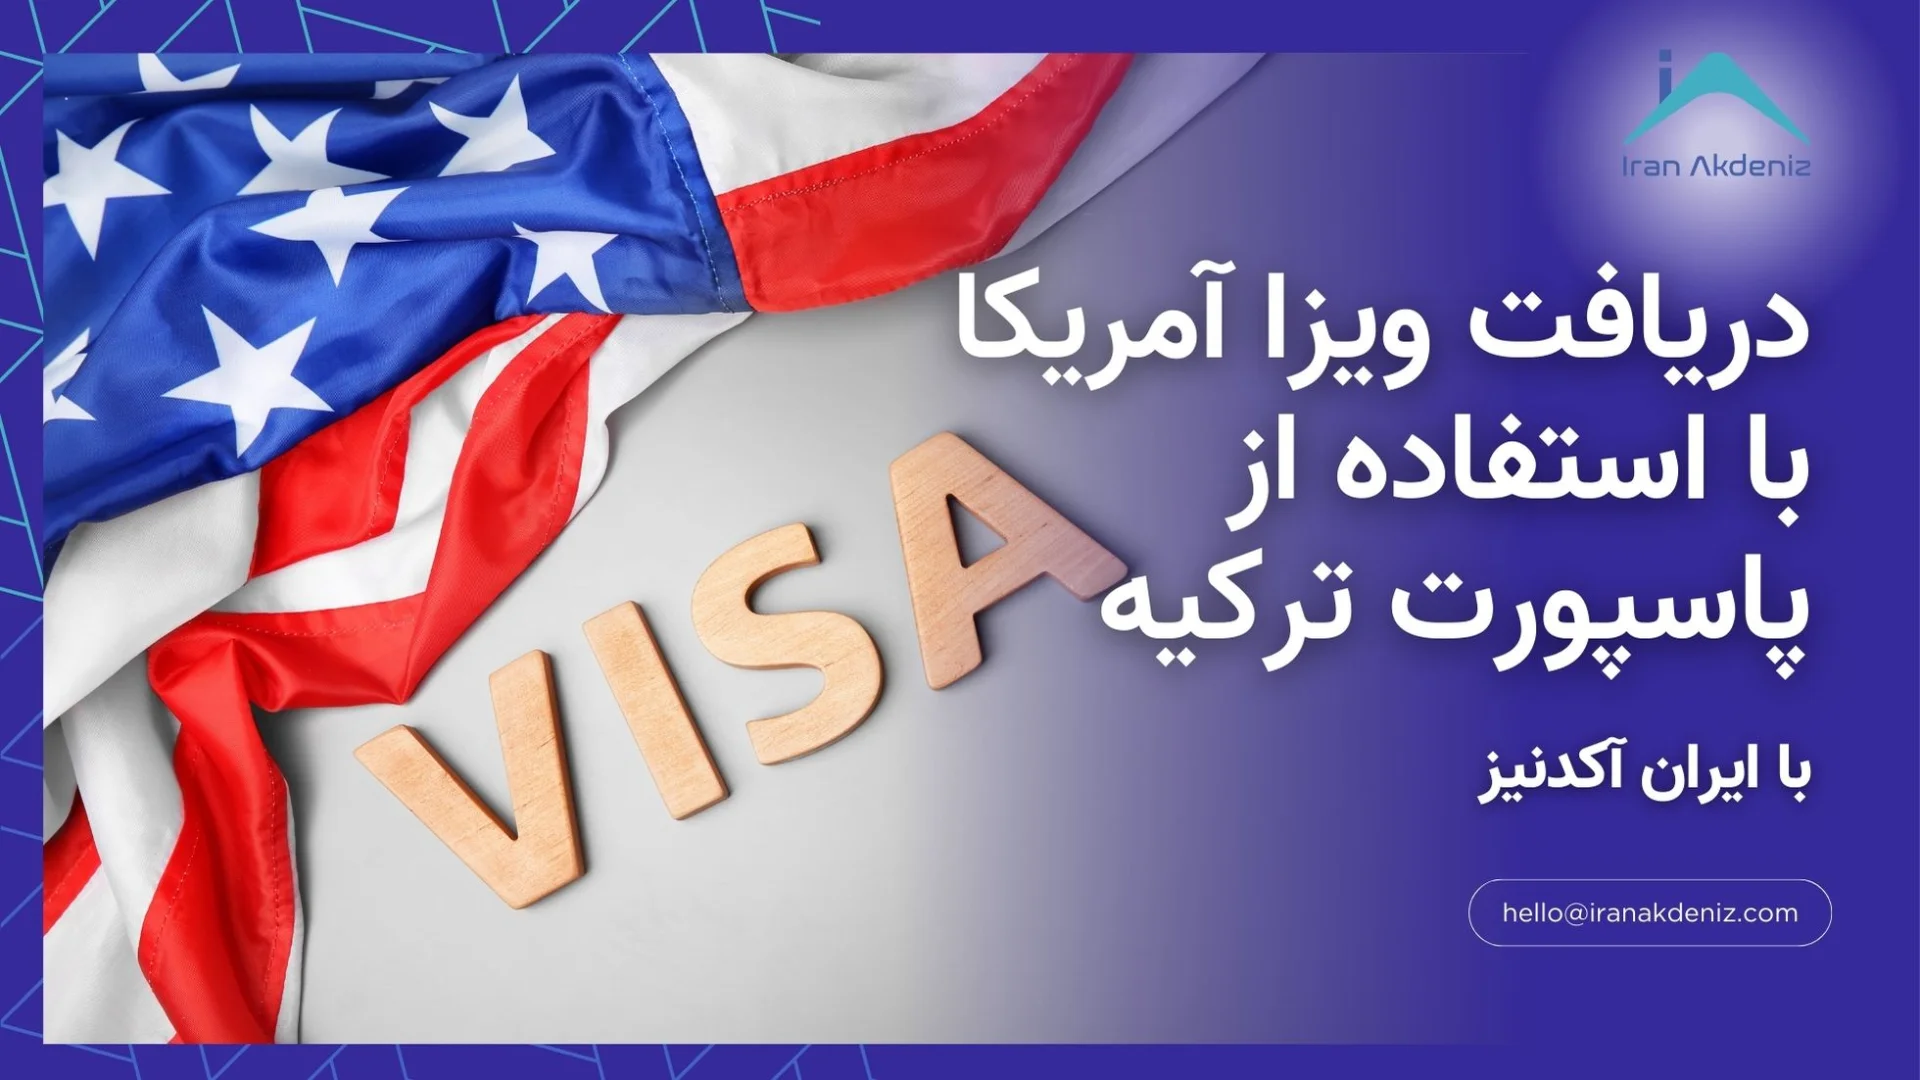 دریافت ویزا آمریکا با استفاده از پاسپورت ترکیه با همکاری ایران آکدنیز